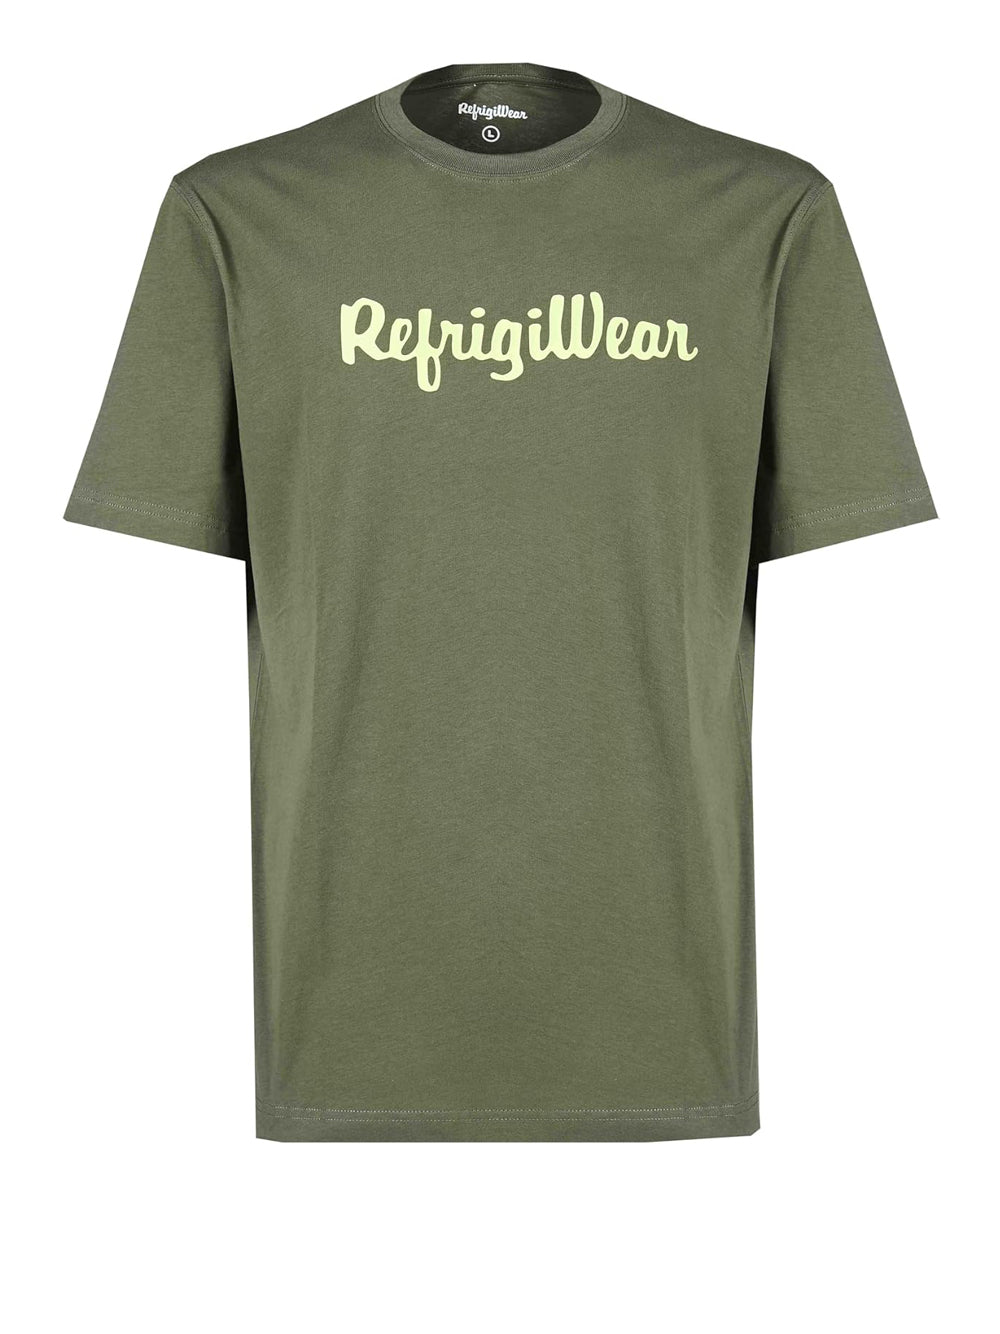 REFRIGIWEAR T-shirt Uomo - Verde modello M0T22100JE9101000